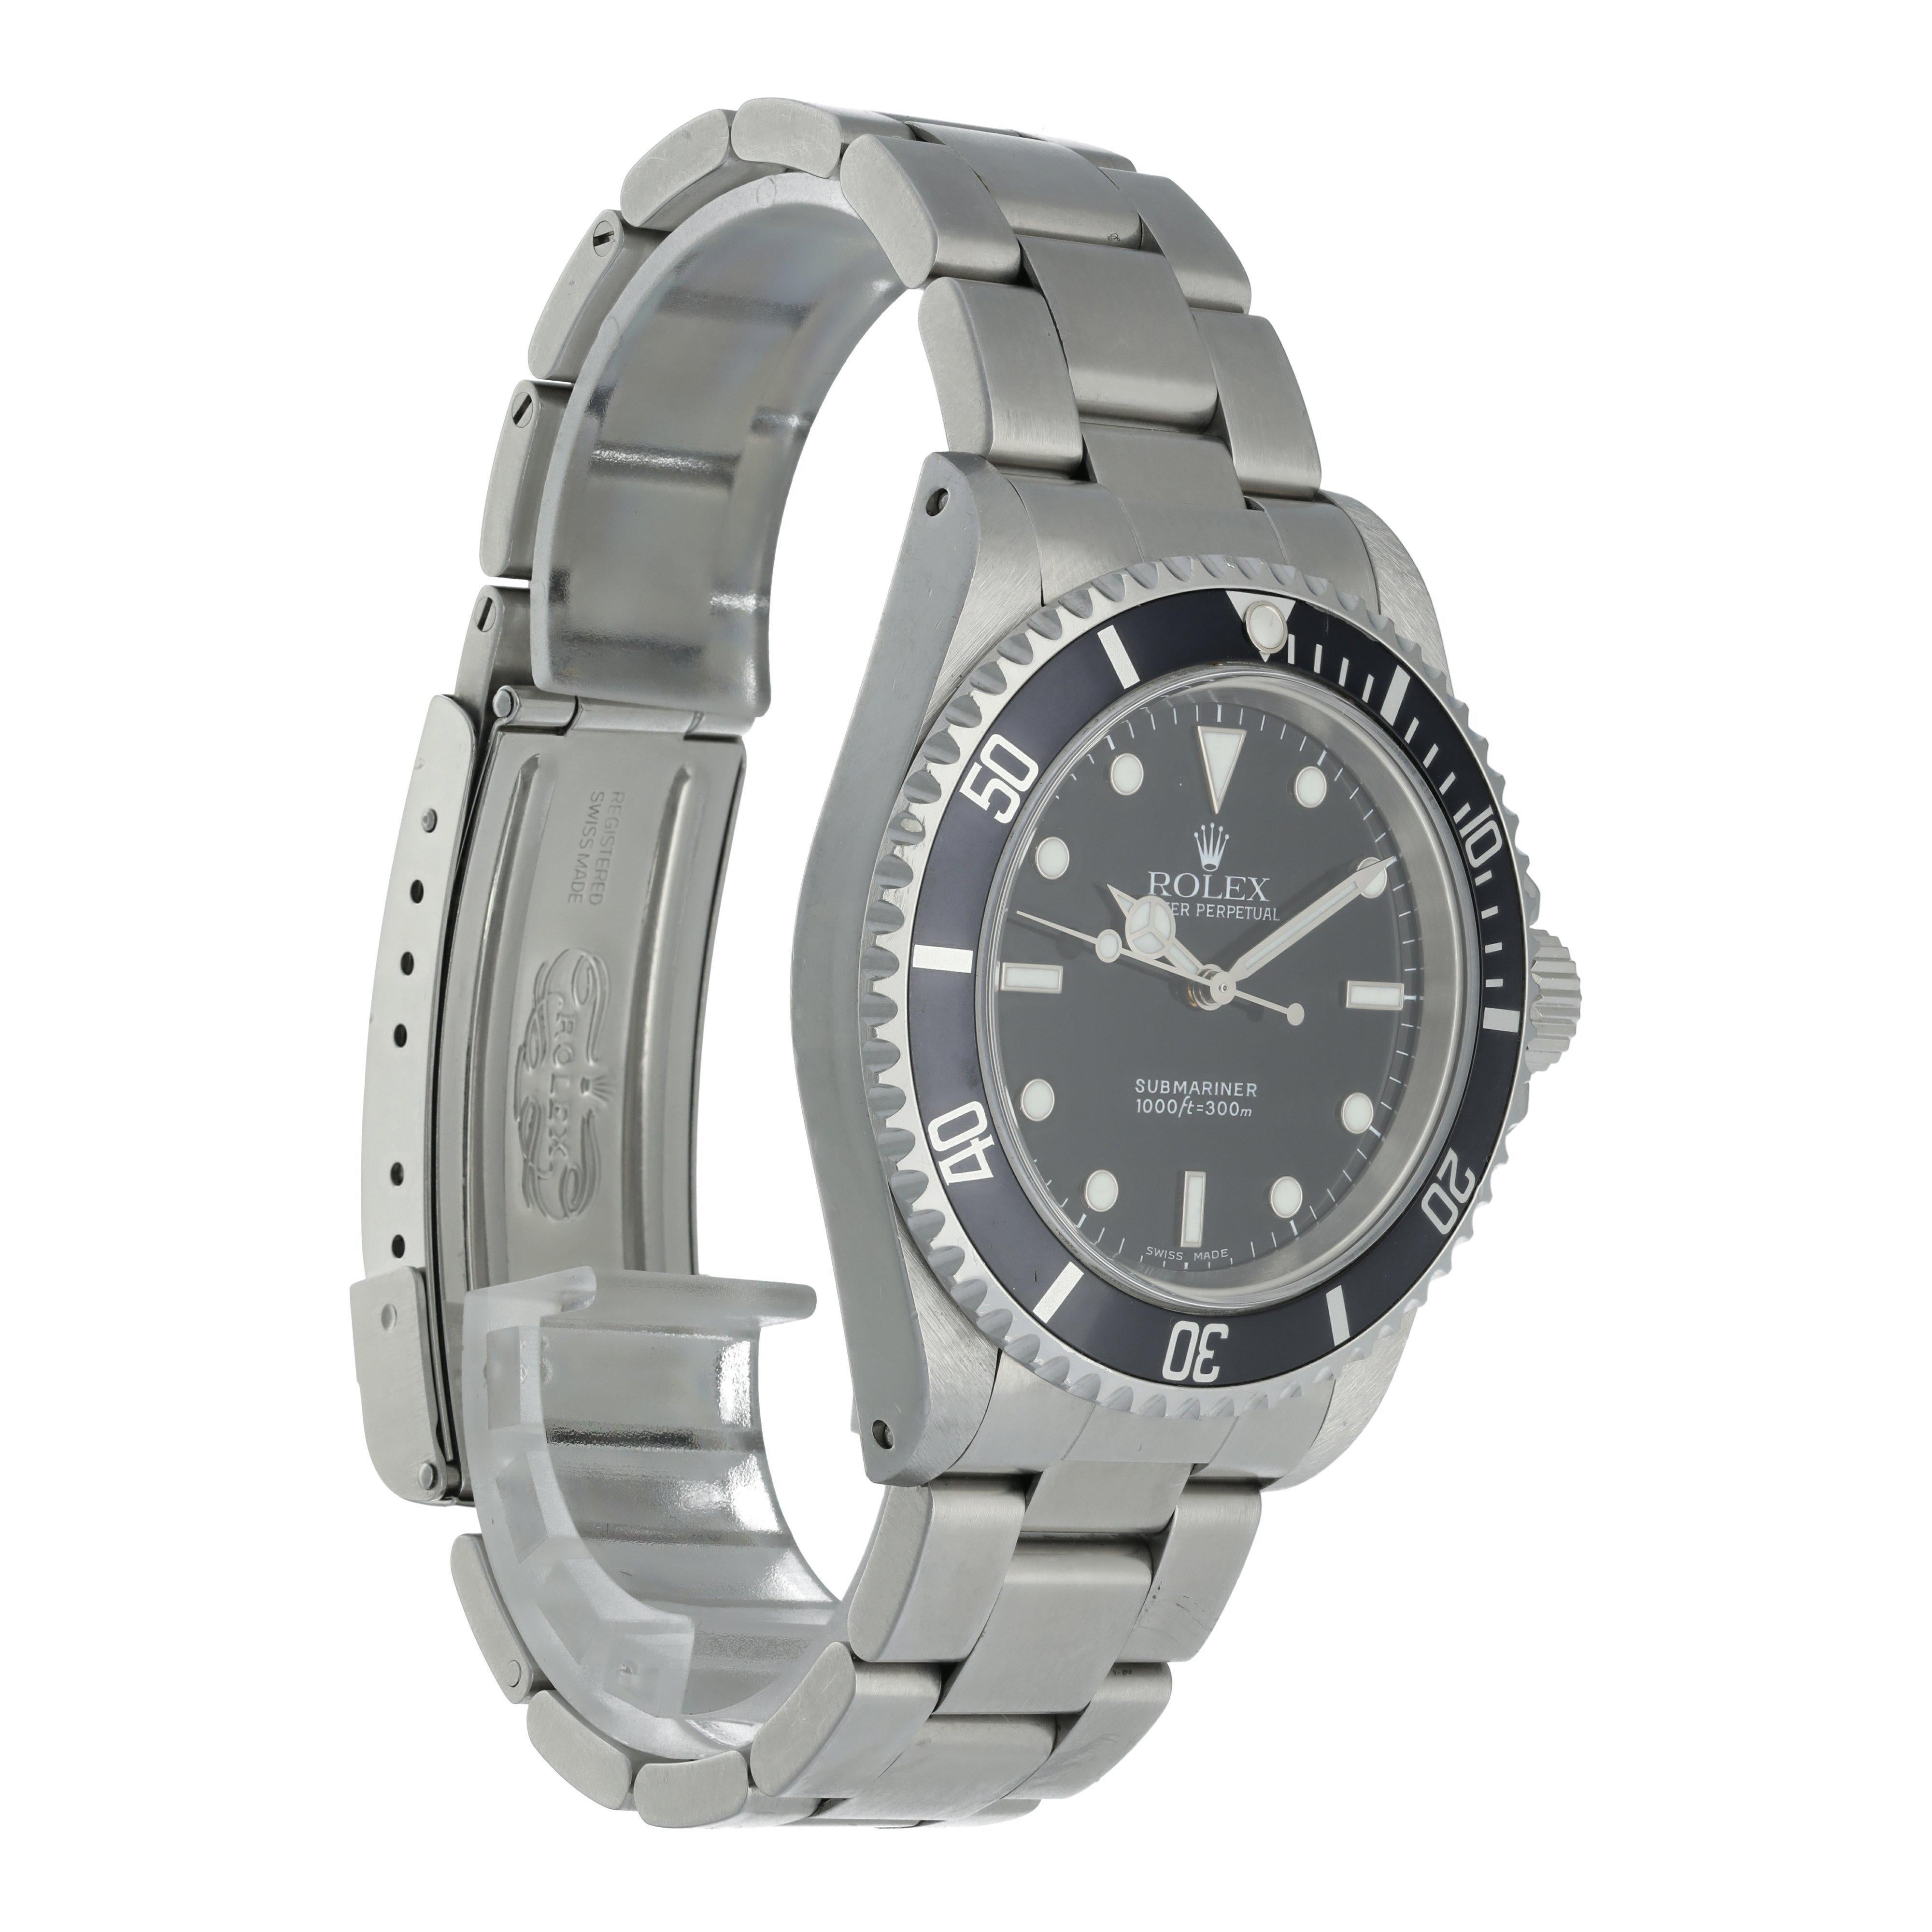 Rolex Submariner 14060 Men's Watch For Sale 1